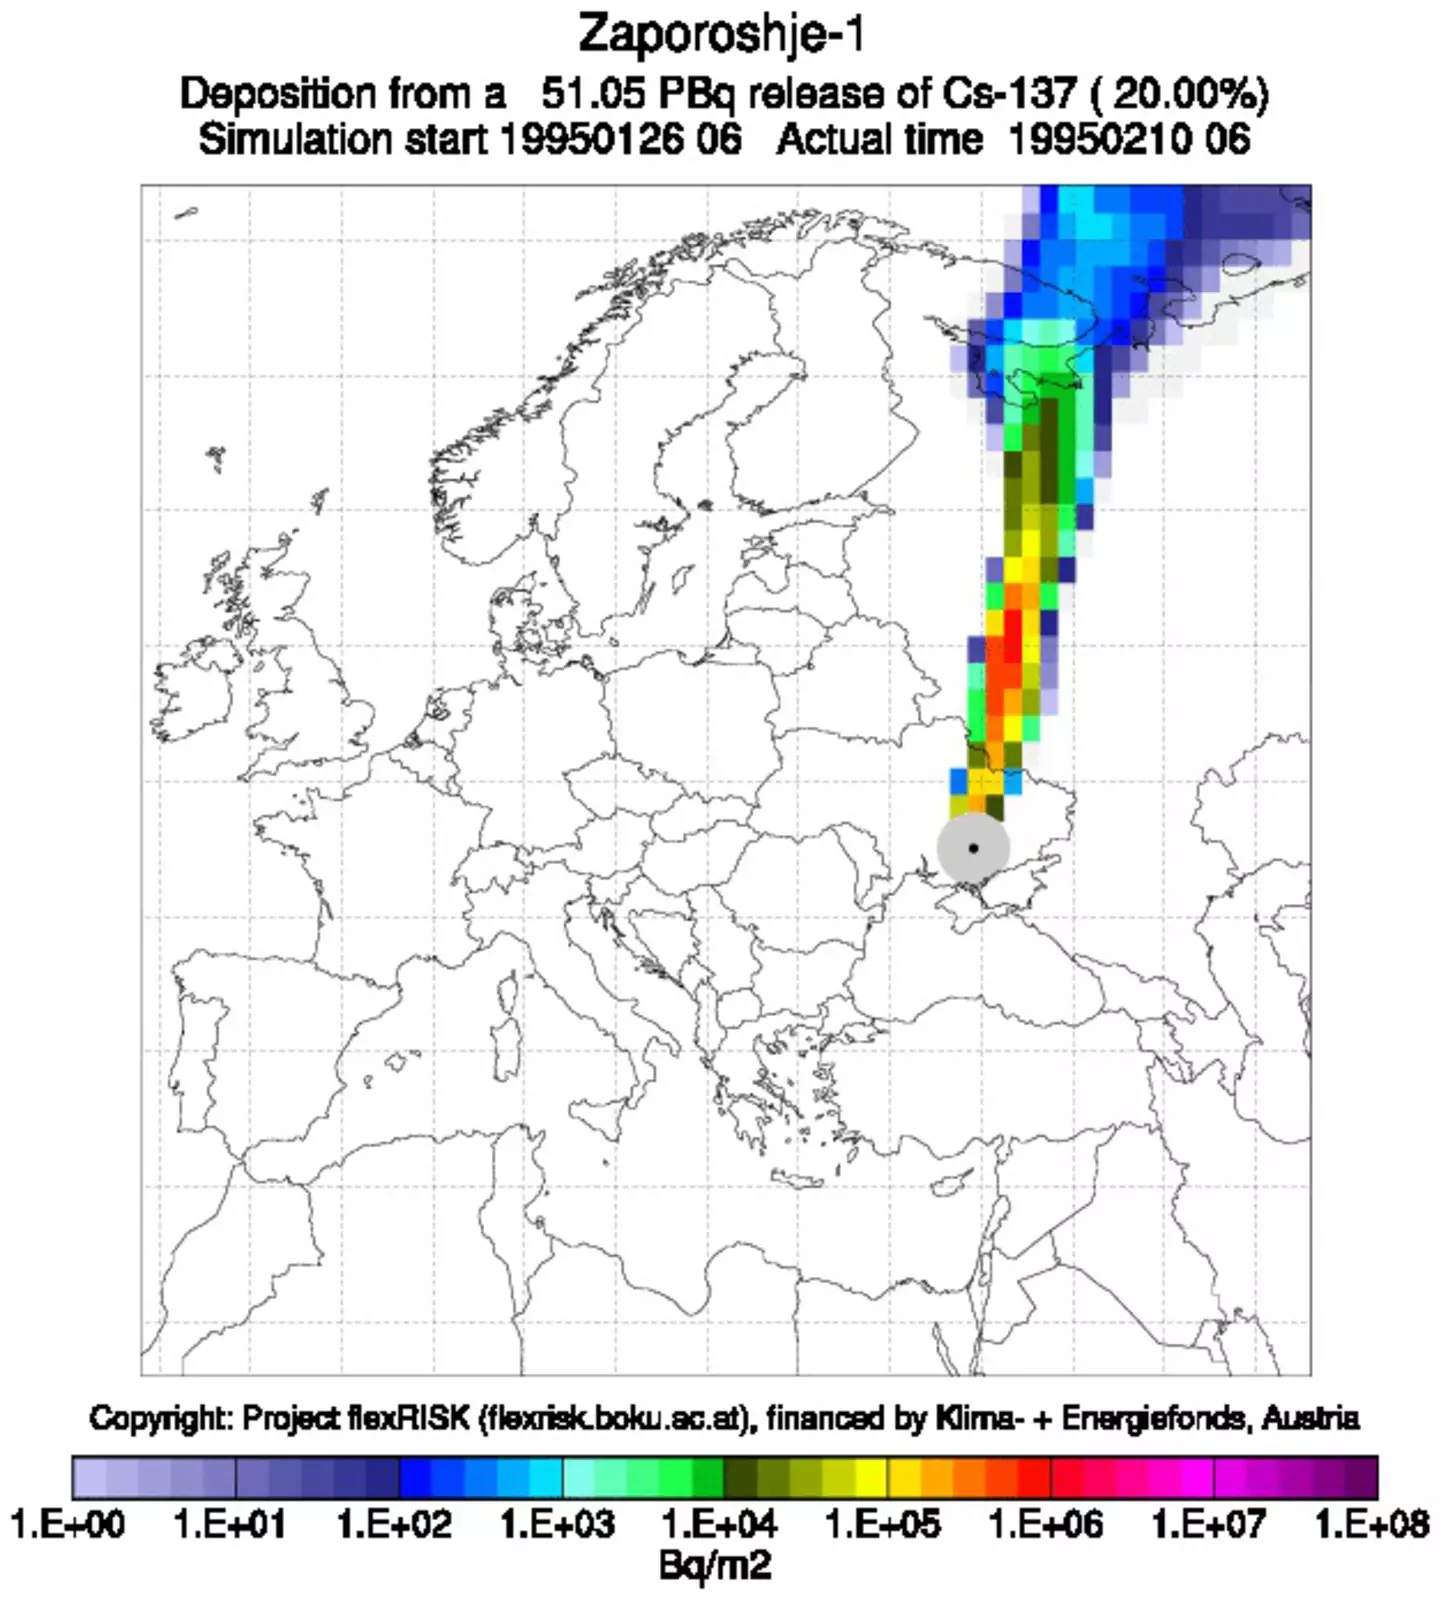 Карты (правда, мирного времени) на которых показано, какие территории могут быть заражены радиацией при аварии на Запорожской АЭС при различных направлениях ветра